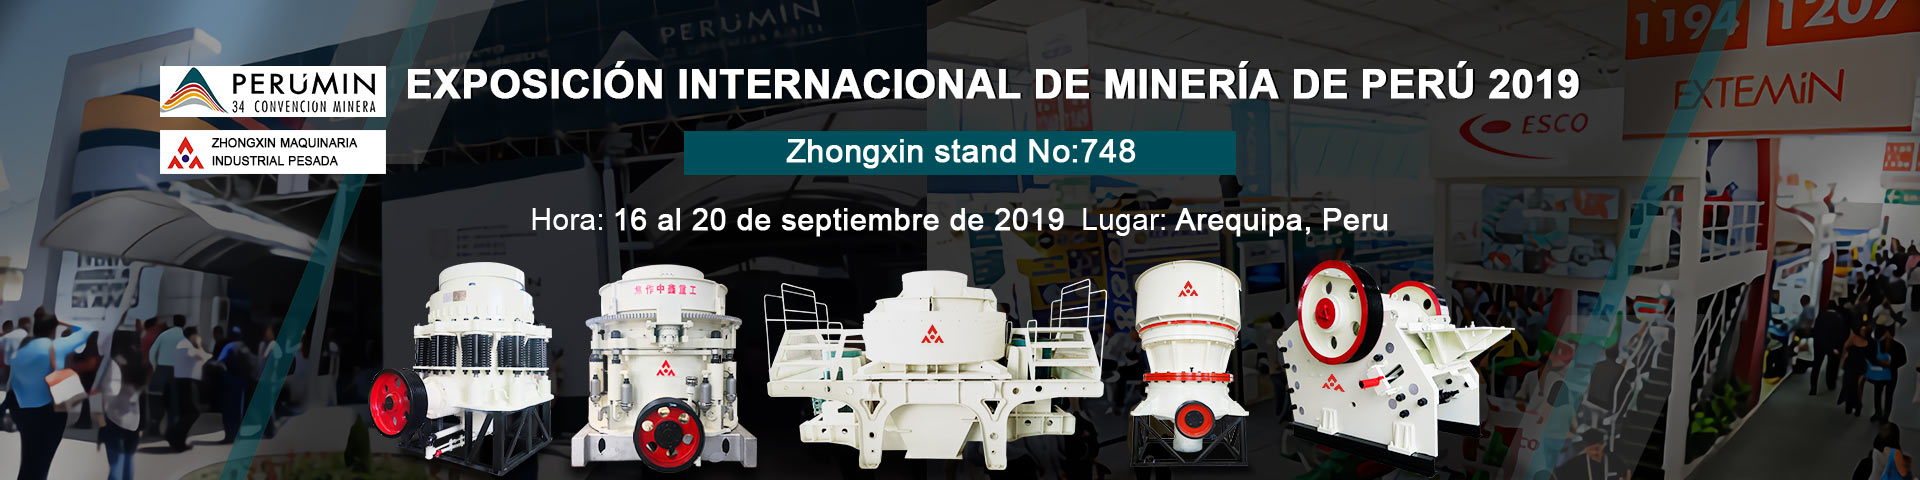 Exposición Internacional de Minería de Perú 2019